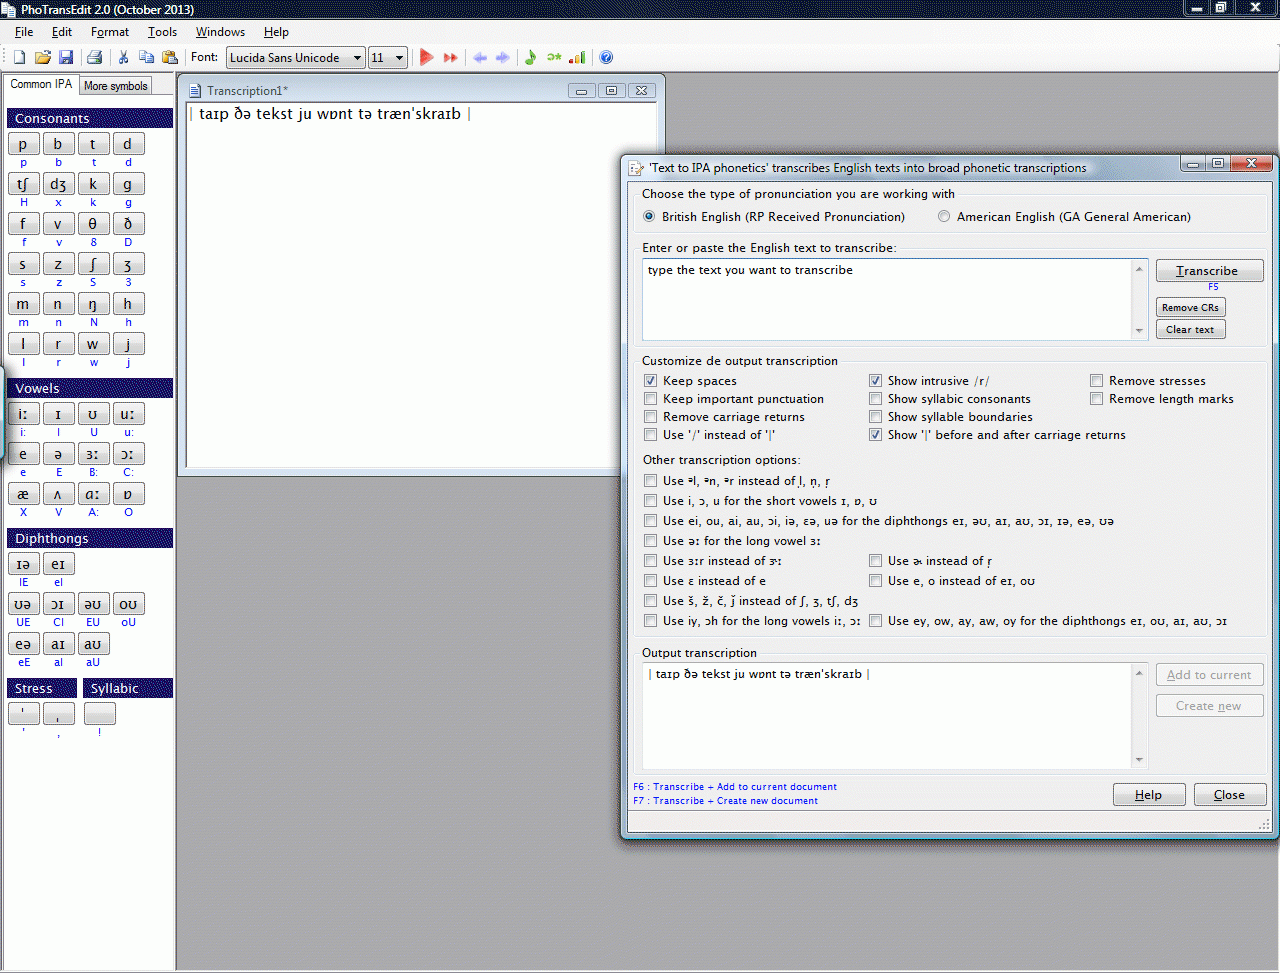 Скрин PhoTransEdit Desktop - бесплатной Windows программы для звуковой транскрипции английских слов.